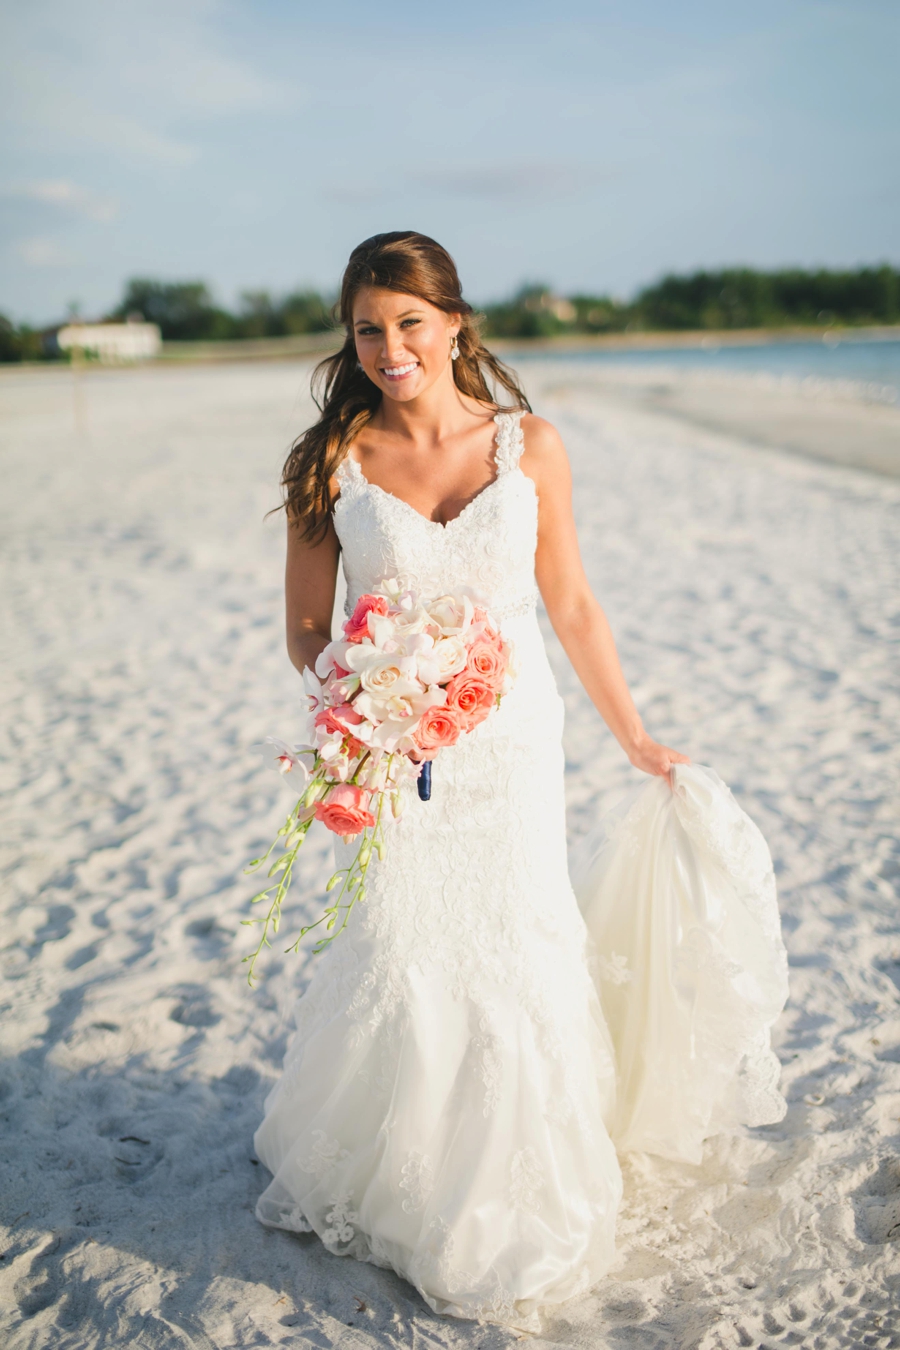 A Nautical Florida Destination Wedding via TheELD.com